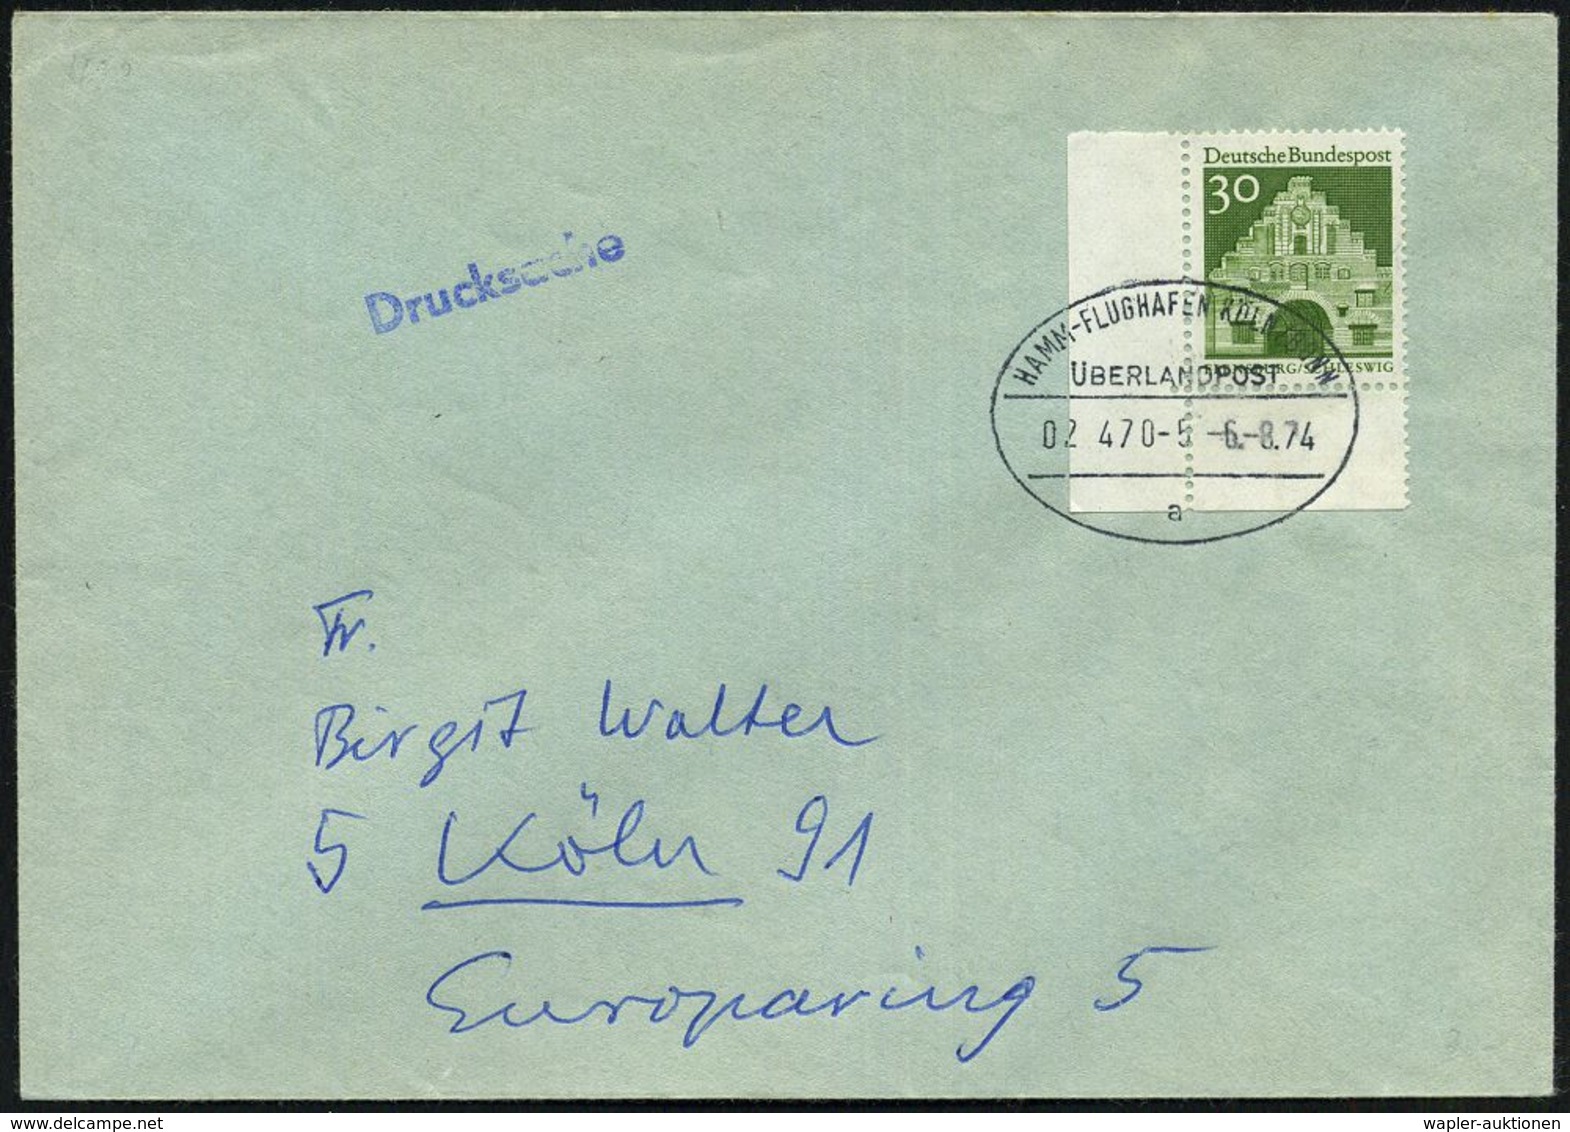 HAMM - FLUGHAFEN KÖLN-BONN/ ÜBERLANDPOST/ 02 470-5/ A 1974 (6.8.) Oval-St. Klar Auf Inl.-Brief (Mi.492 Eckrand) - Martin - Coches